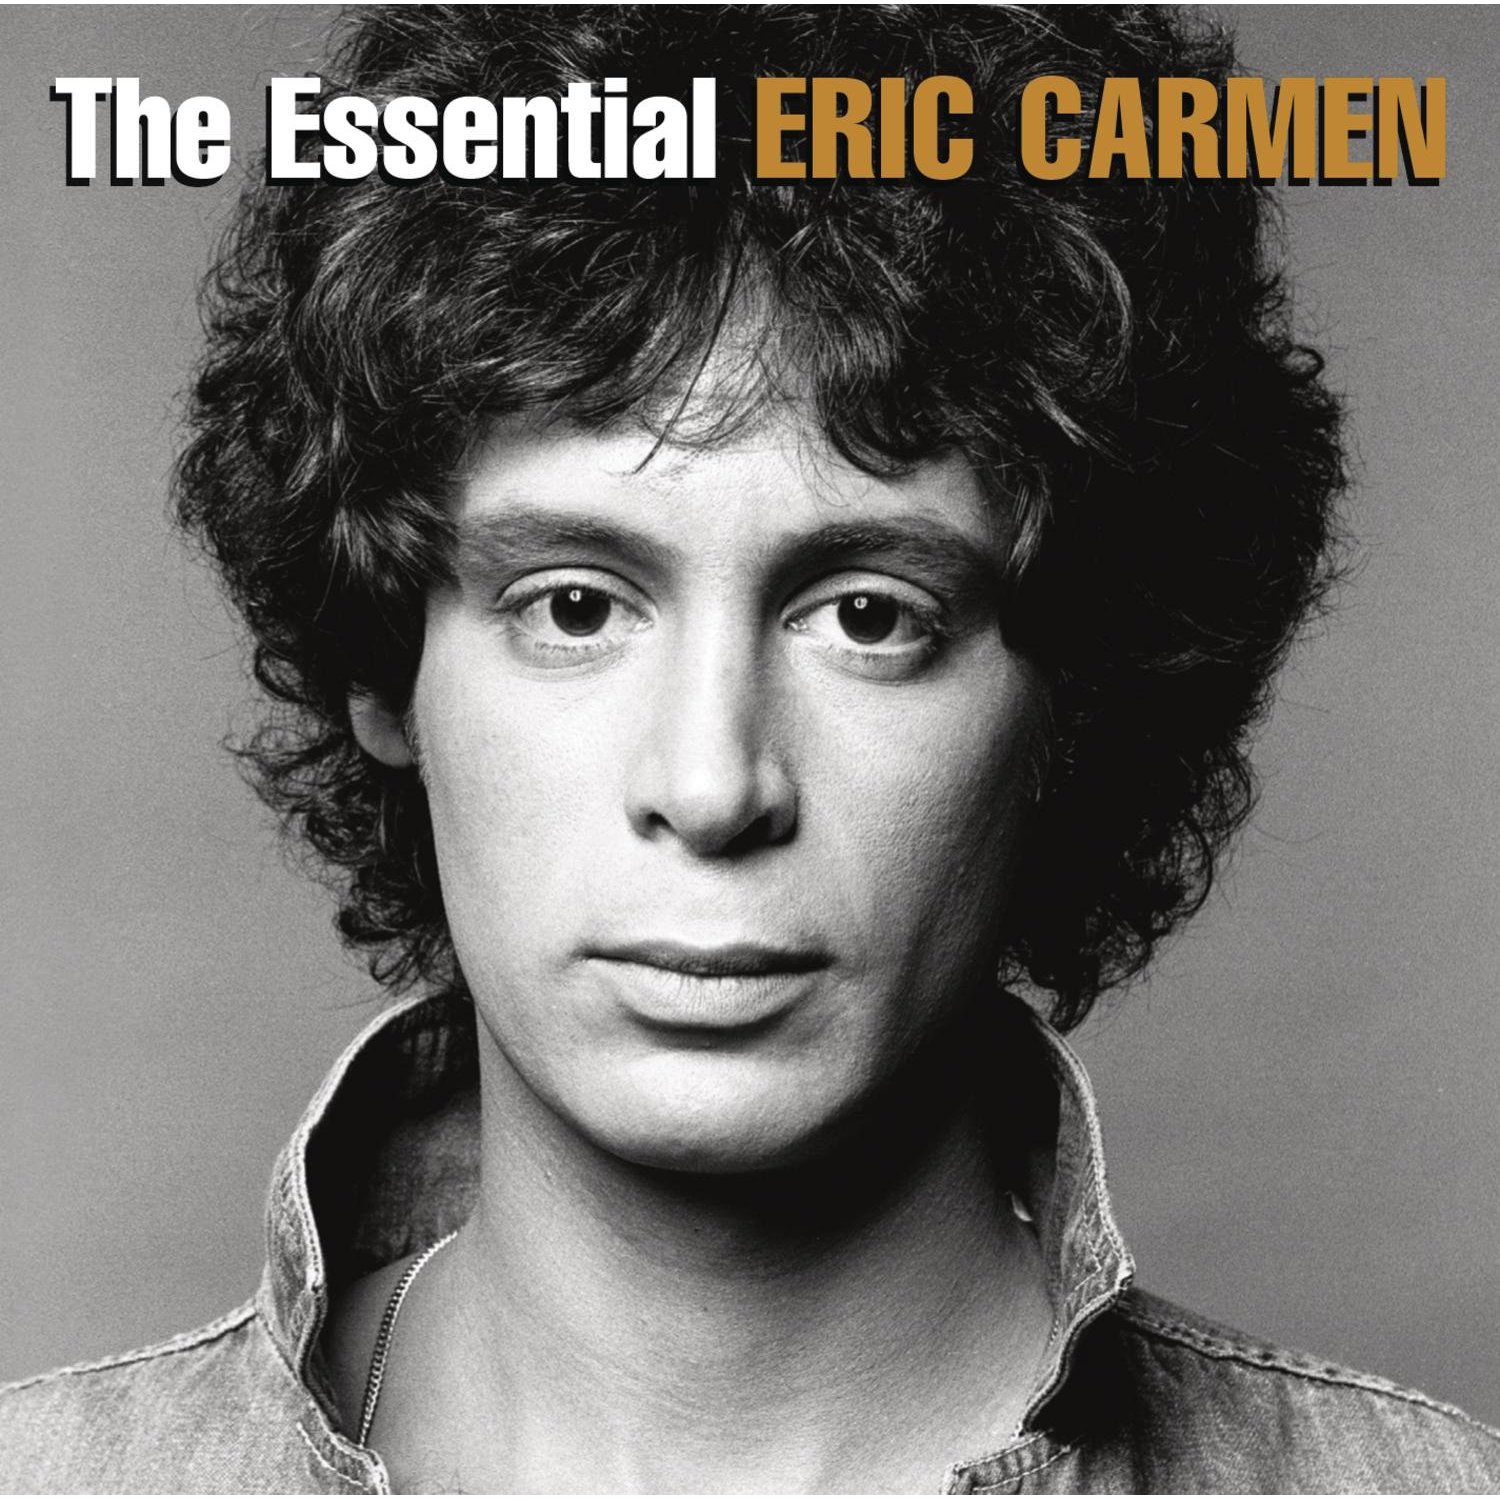 Eric Carmen: The Essential Eric Carmen